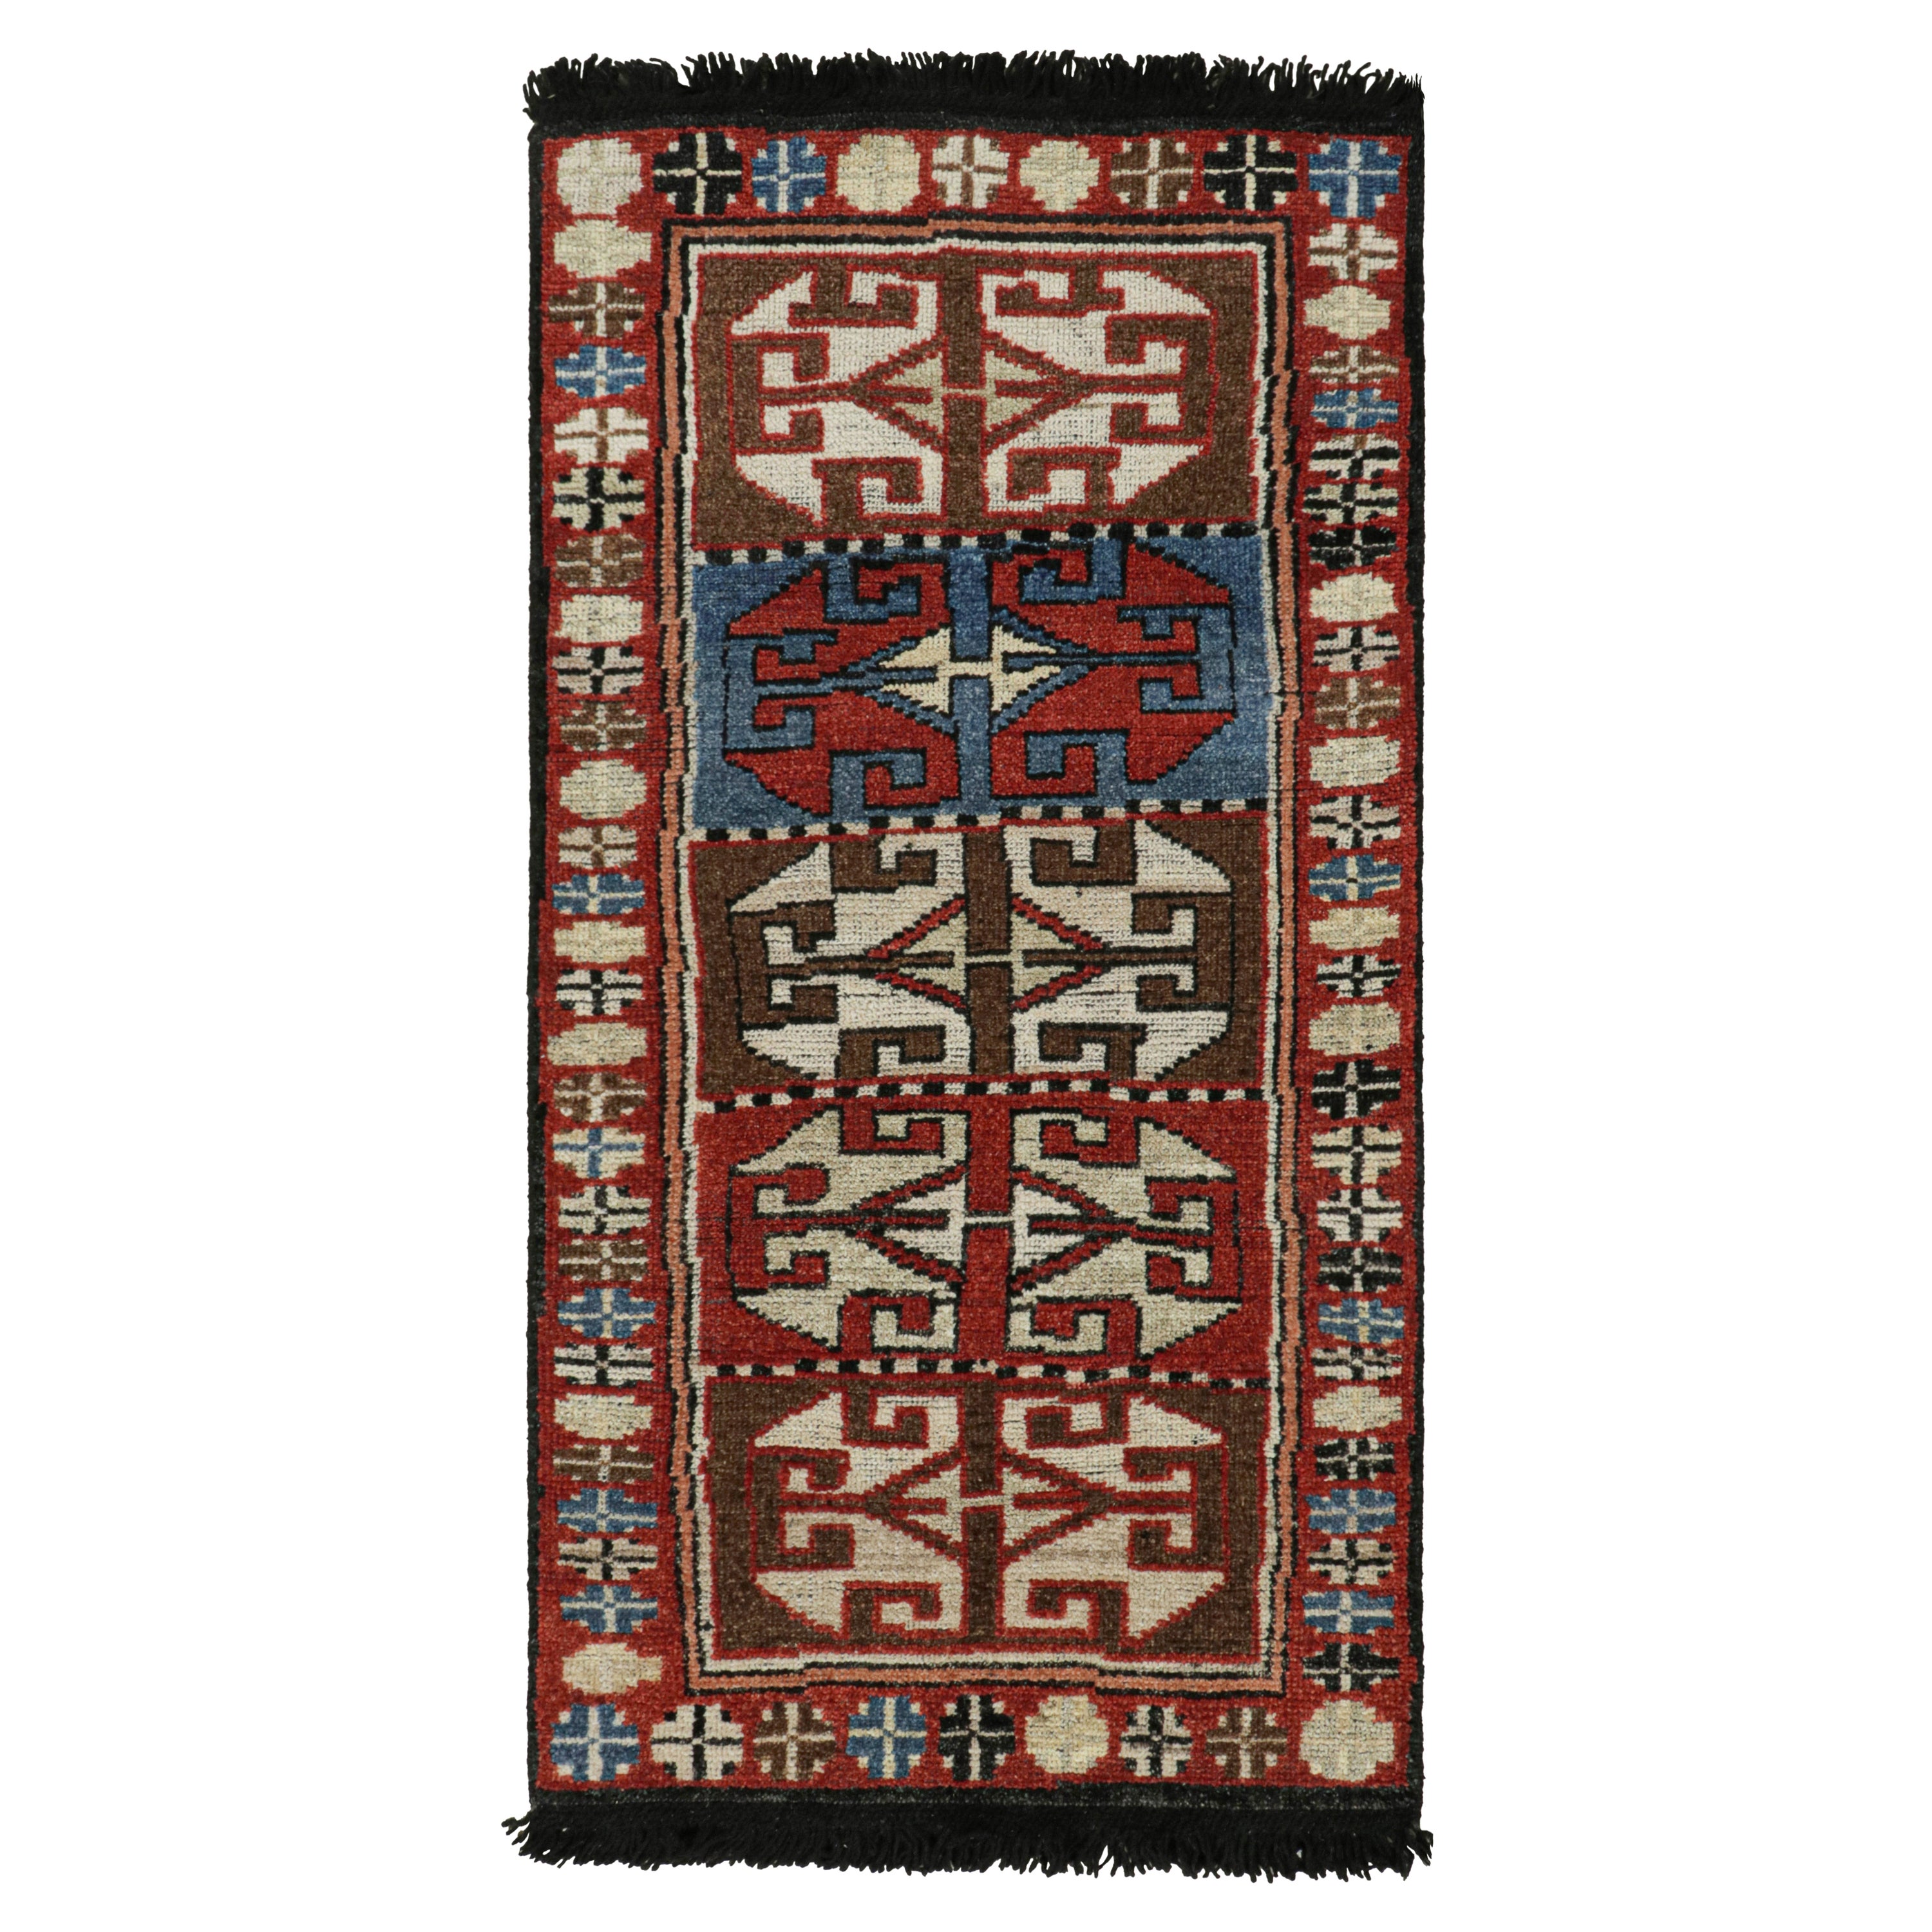 Rug & Kilim's Antiker Teppich im Stammesstil mit roten, blauen und braunen Mustern